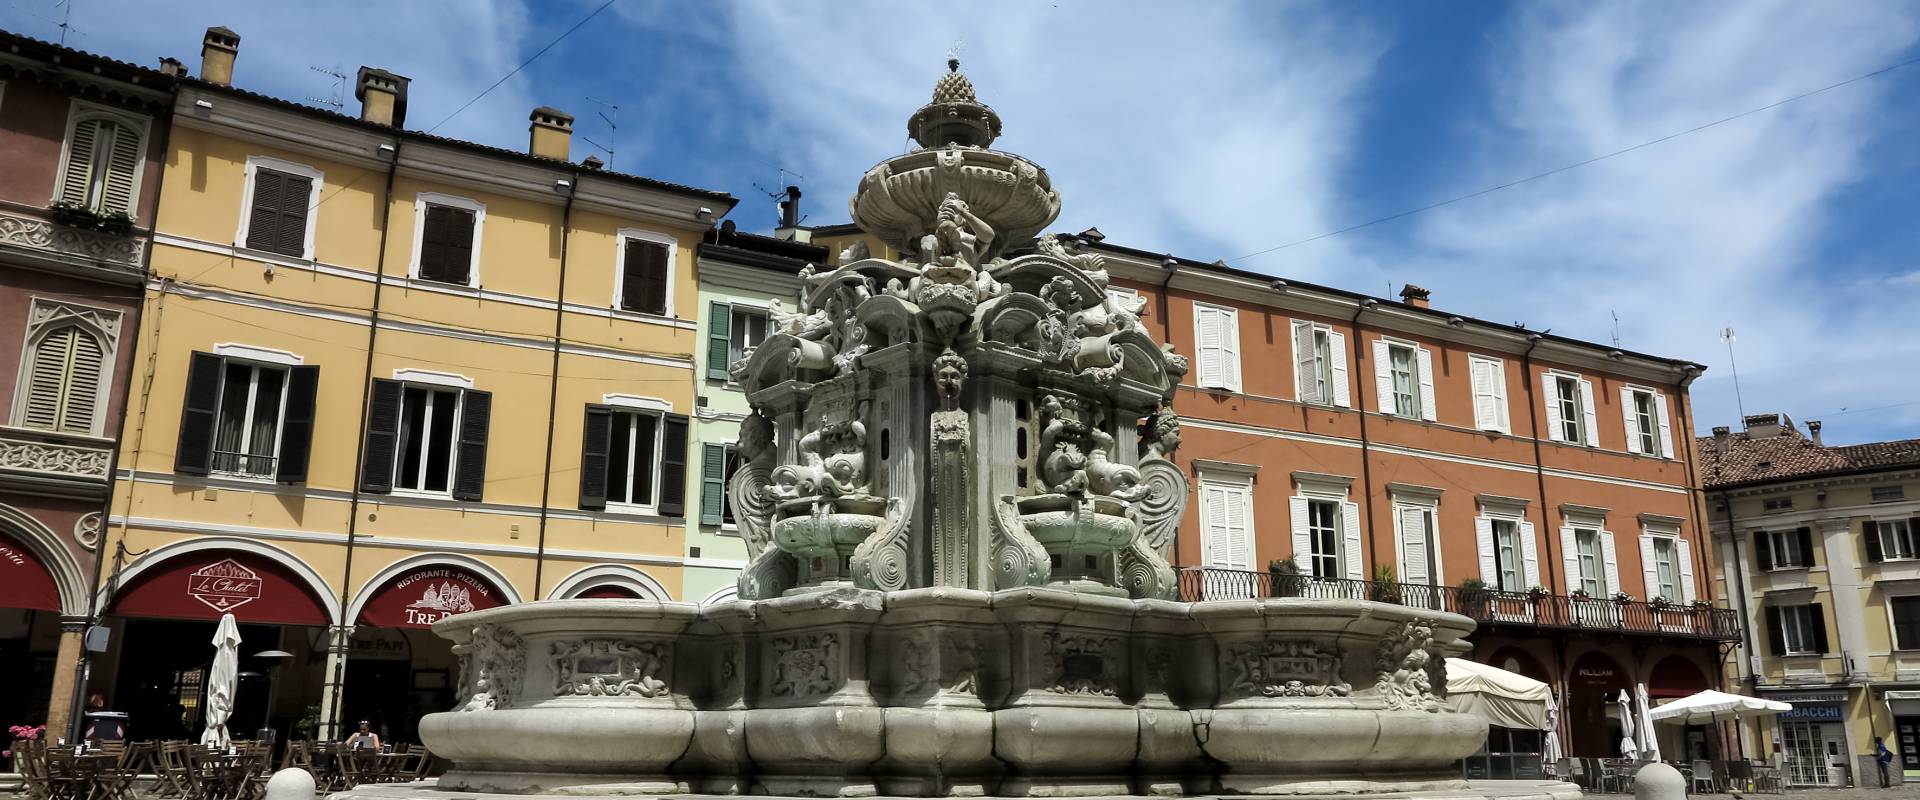 Fontana Masini - IMG 0450 photo by Pierpaoloturchi